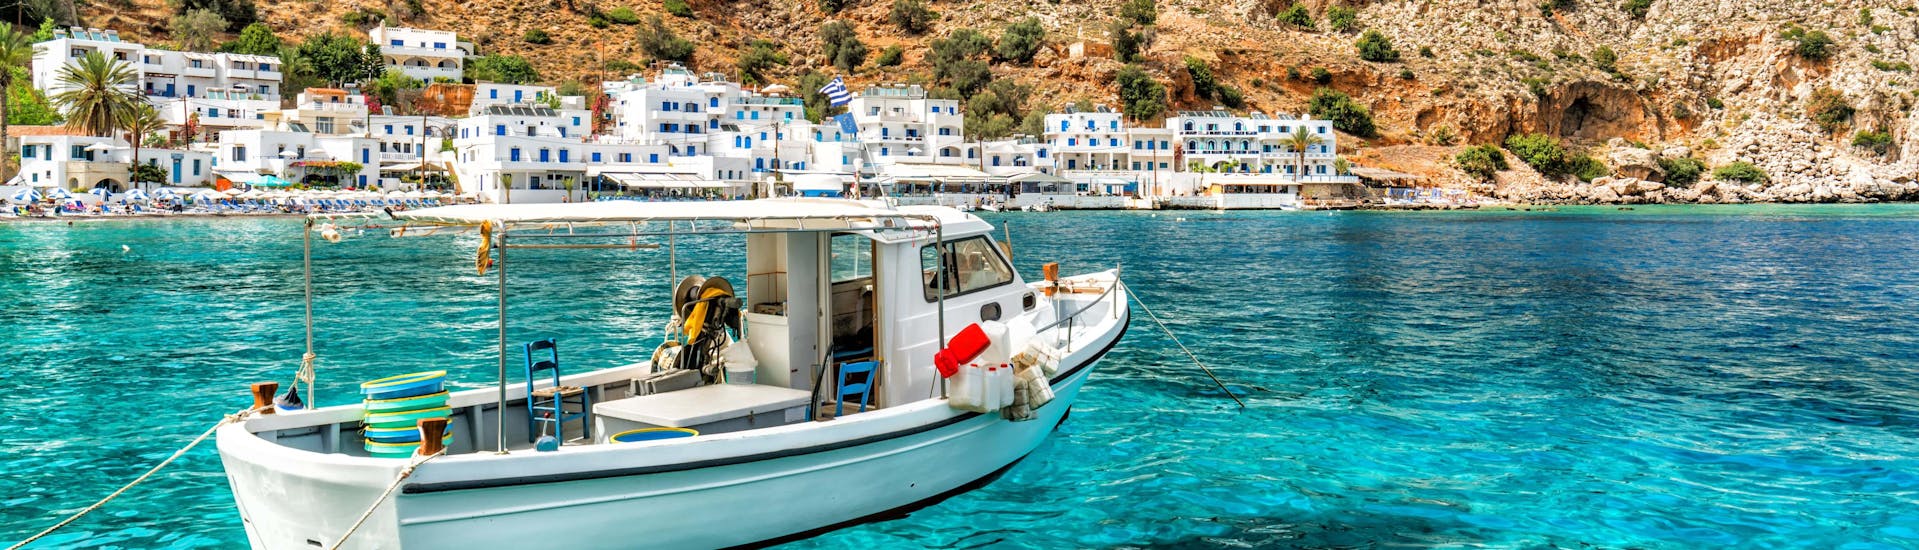 Un bateau sur l'eau cristalline devant la côte de Crète, une destination populaire pour les excursions en bateau. 